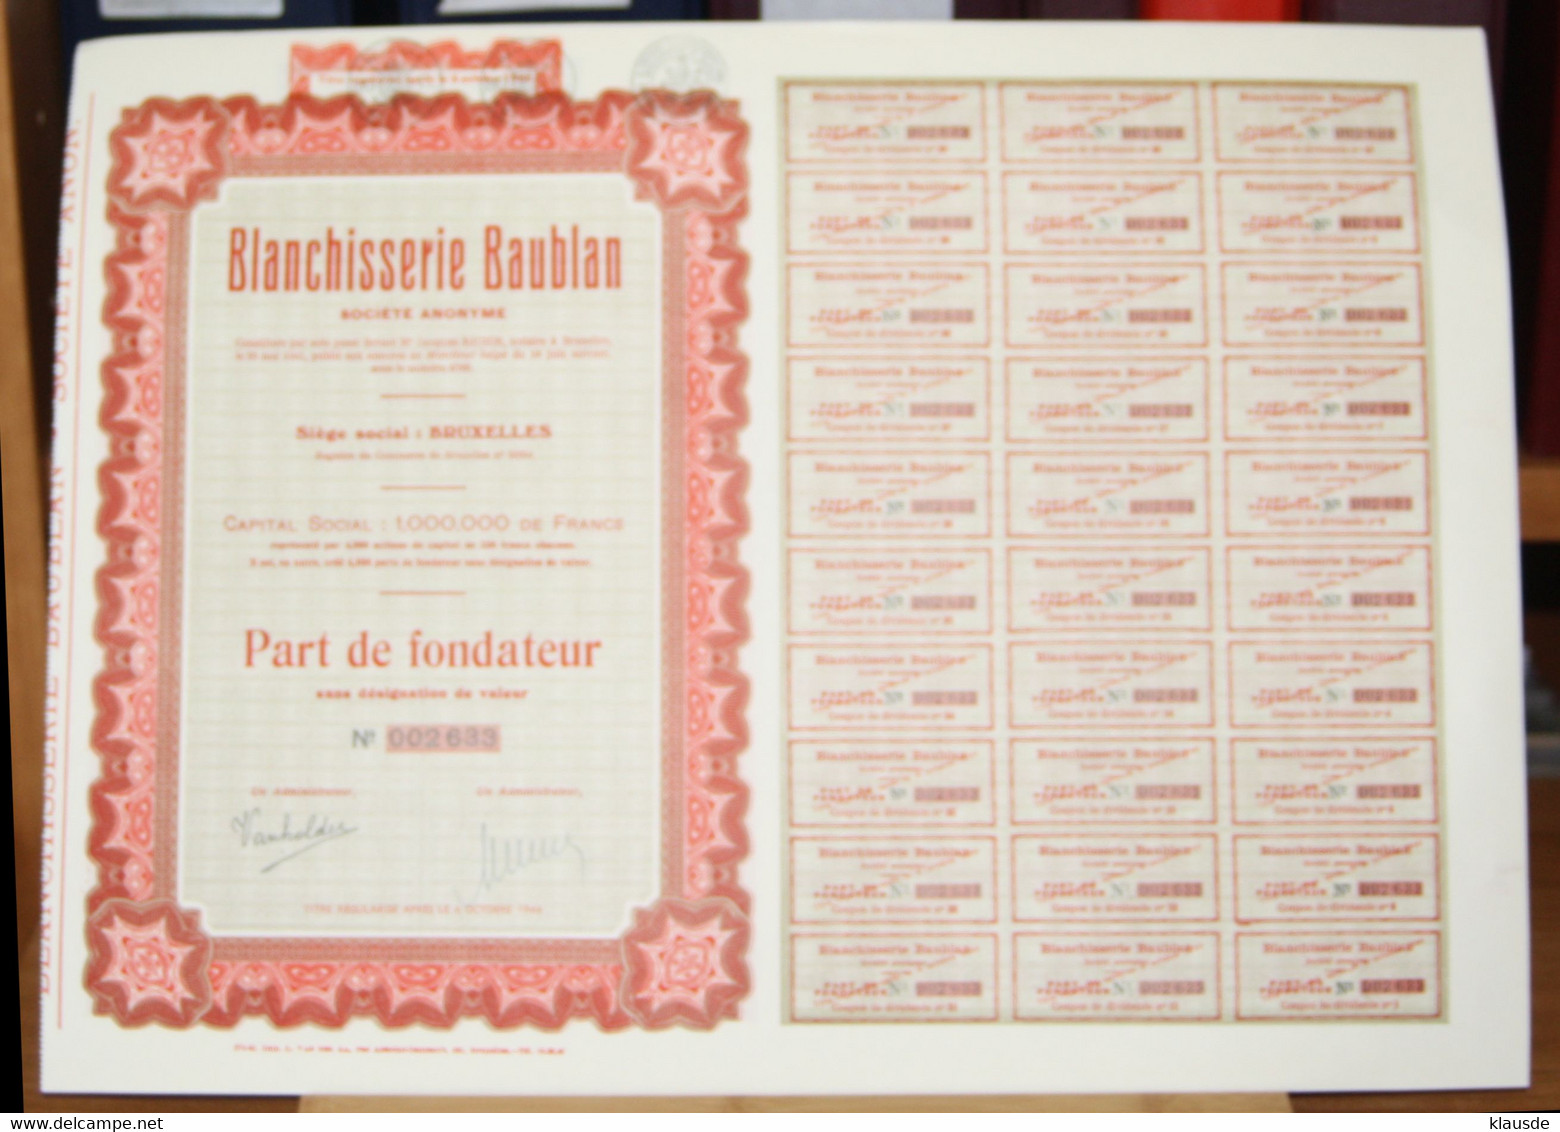 Blanchisserie Baublan S.A Aktie Belgien Wäscherei - Textile